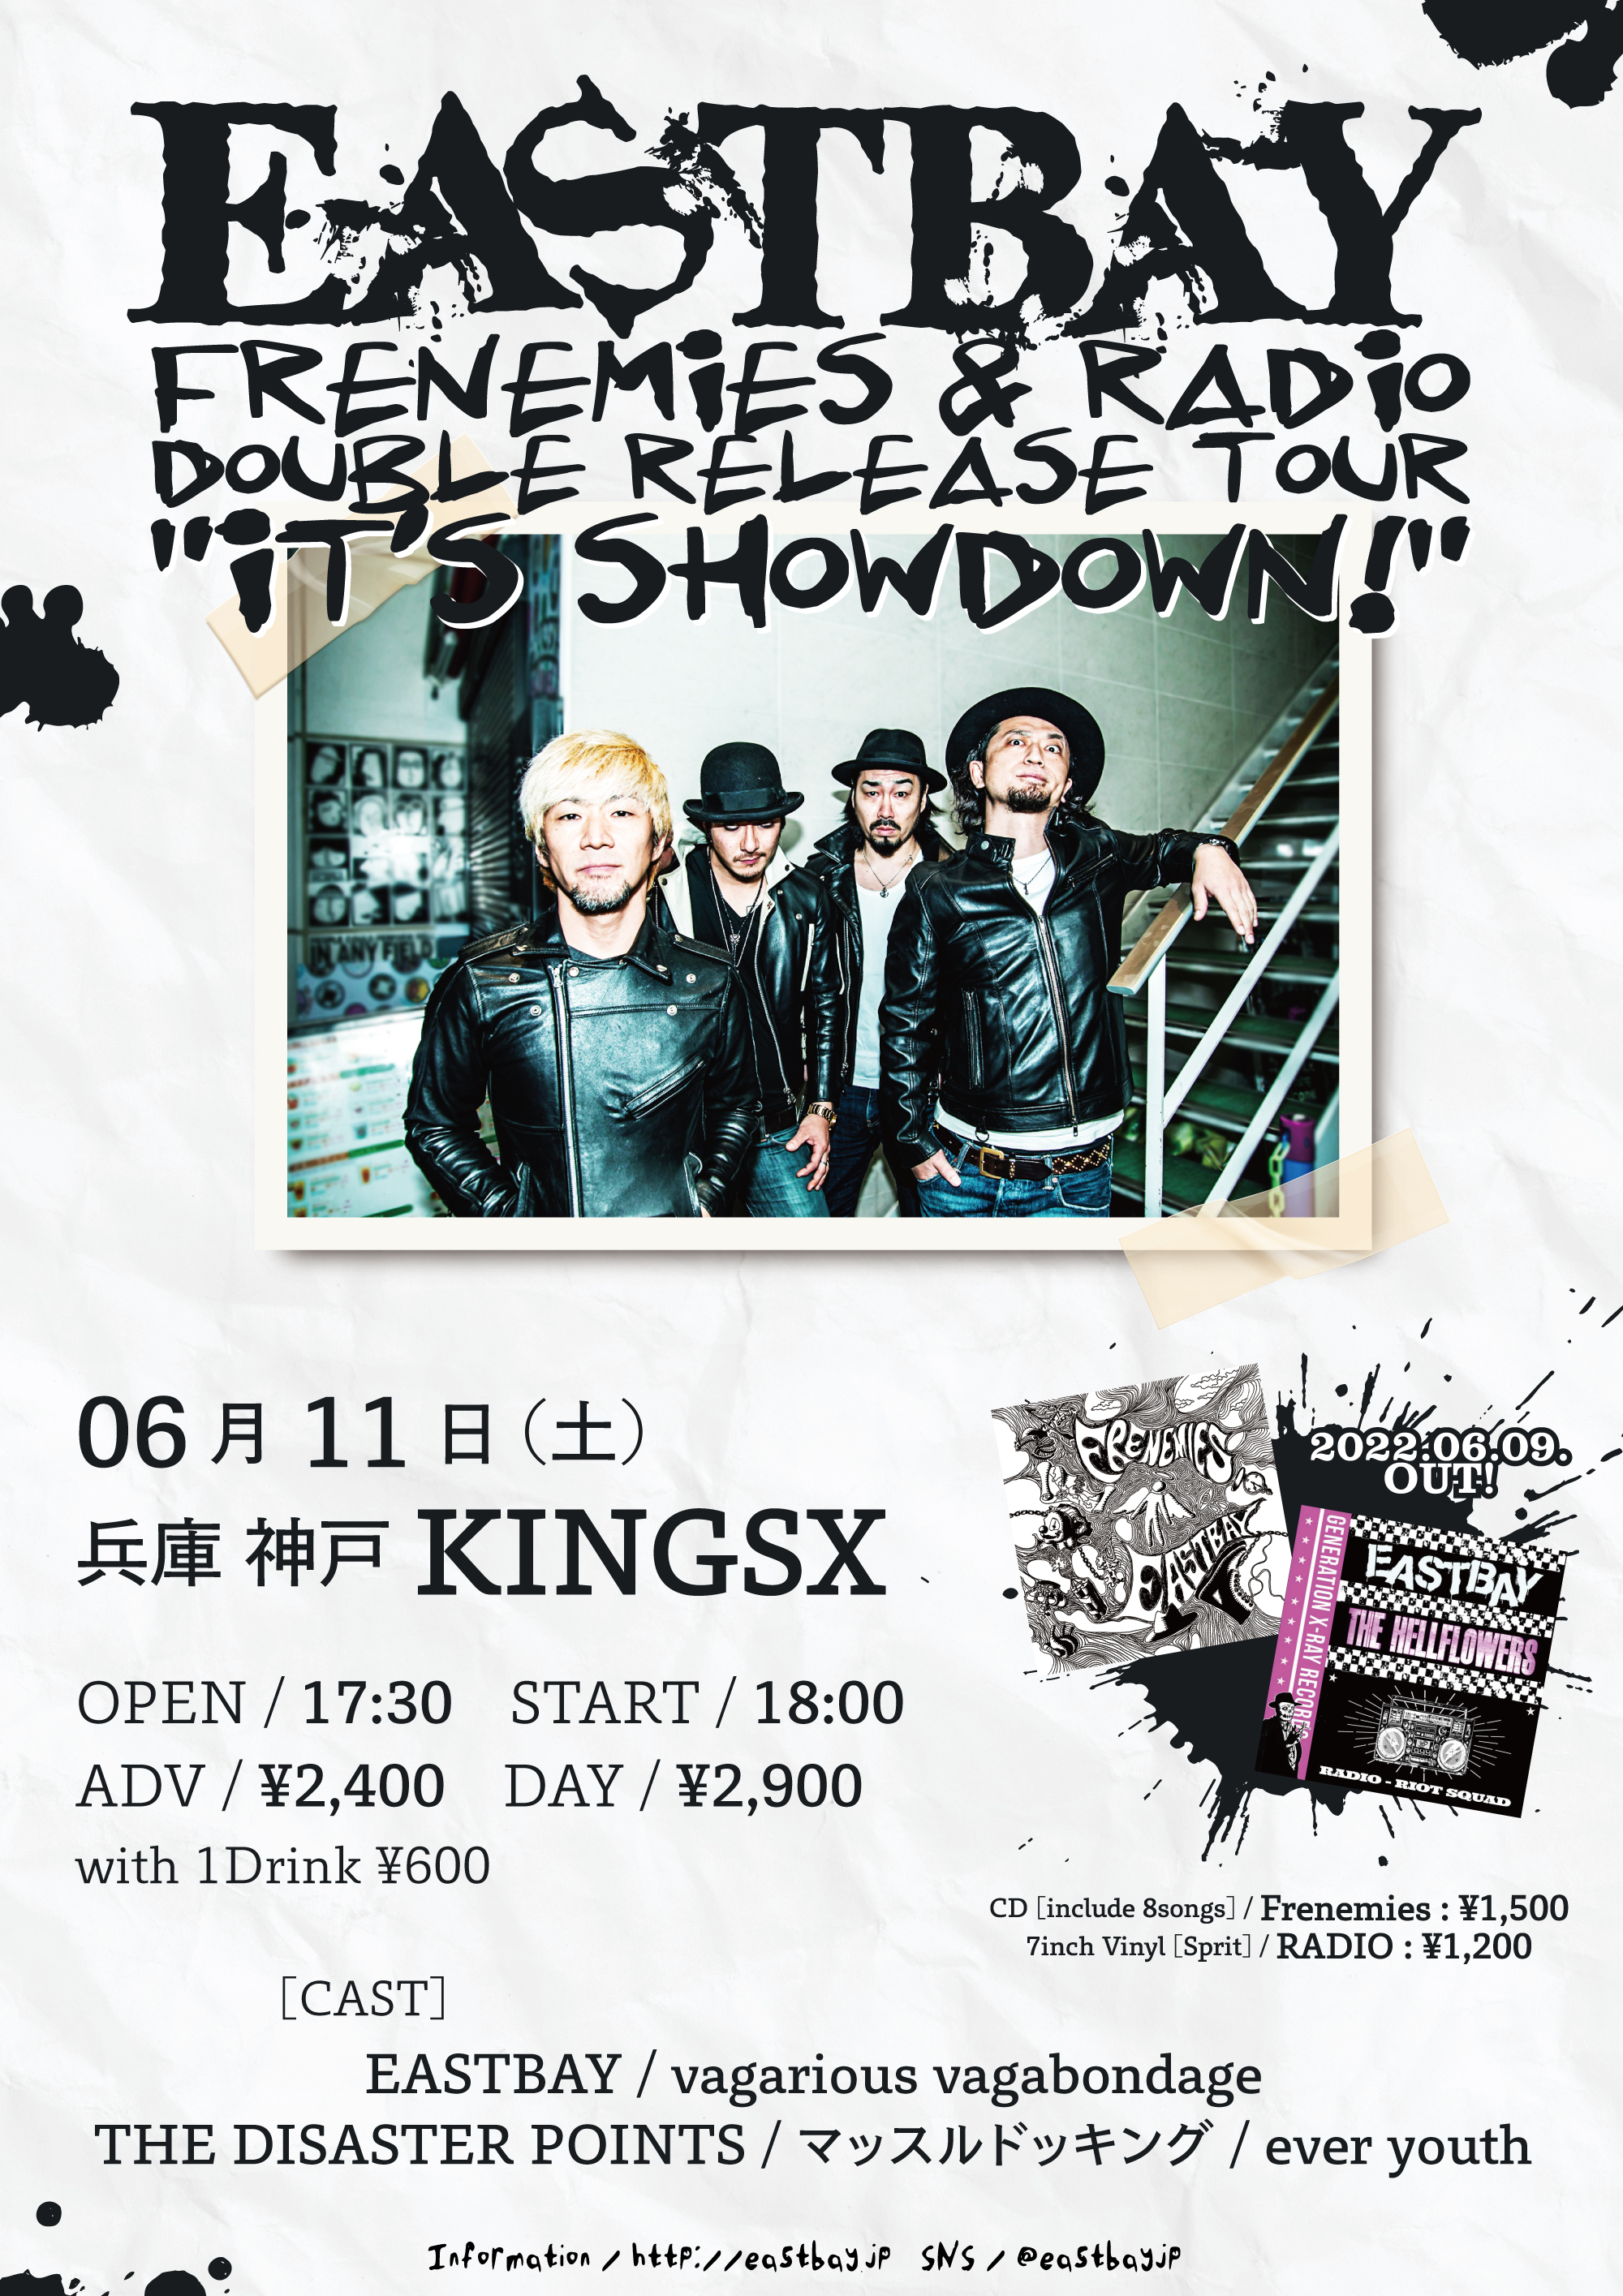 EASTBAY Release Tour “It’s Showdown!” in Kobeの写真